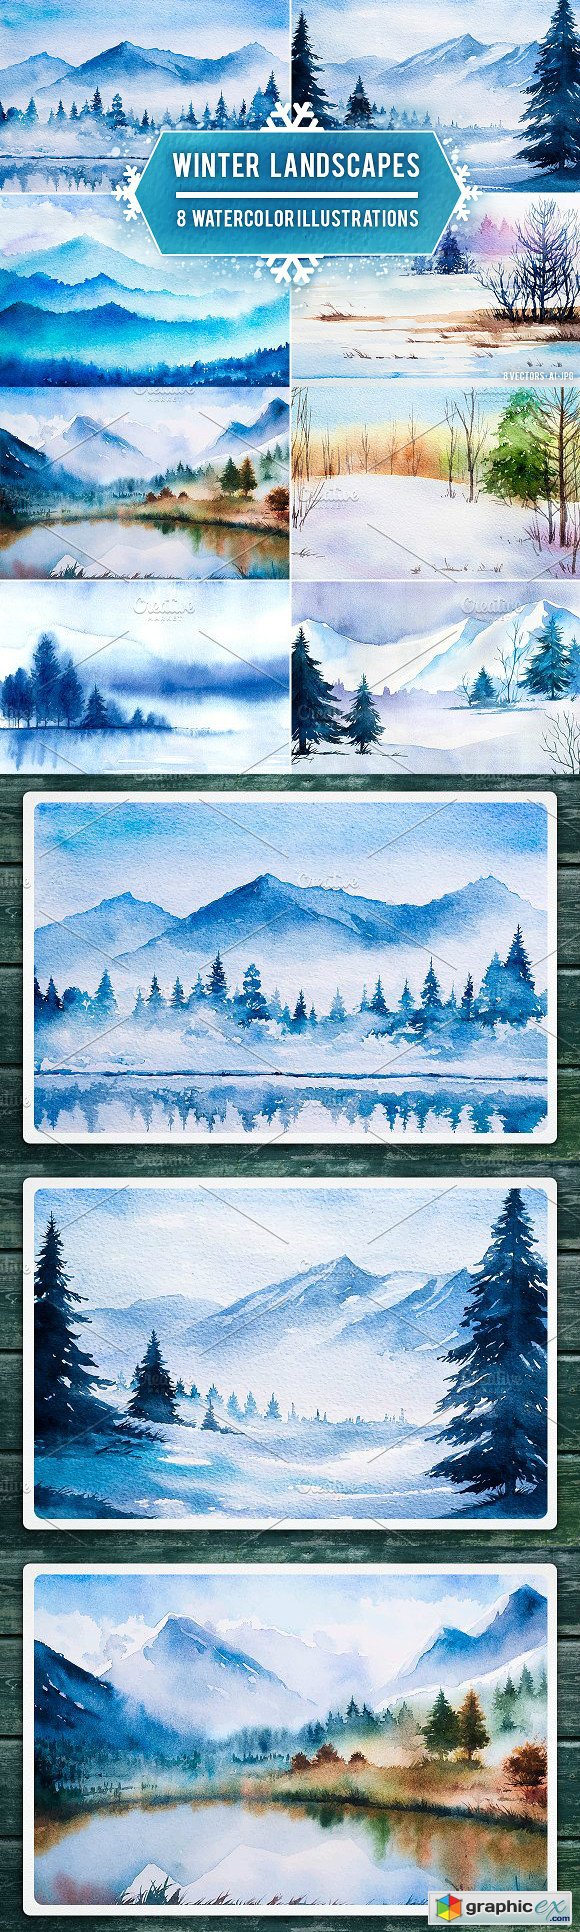 Winter Landscapes set2 Watercolor